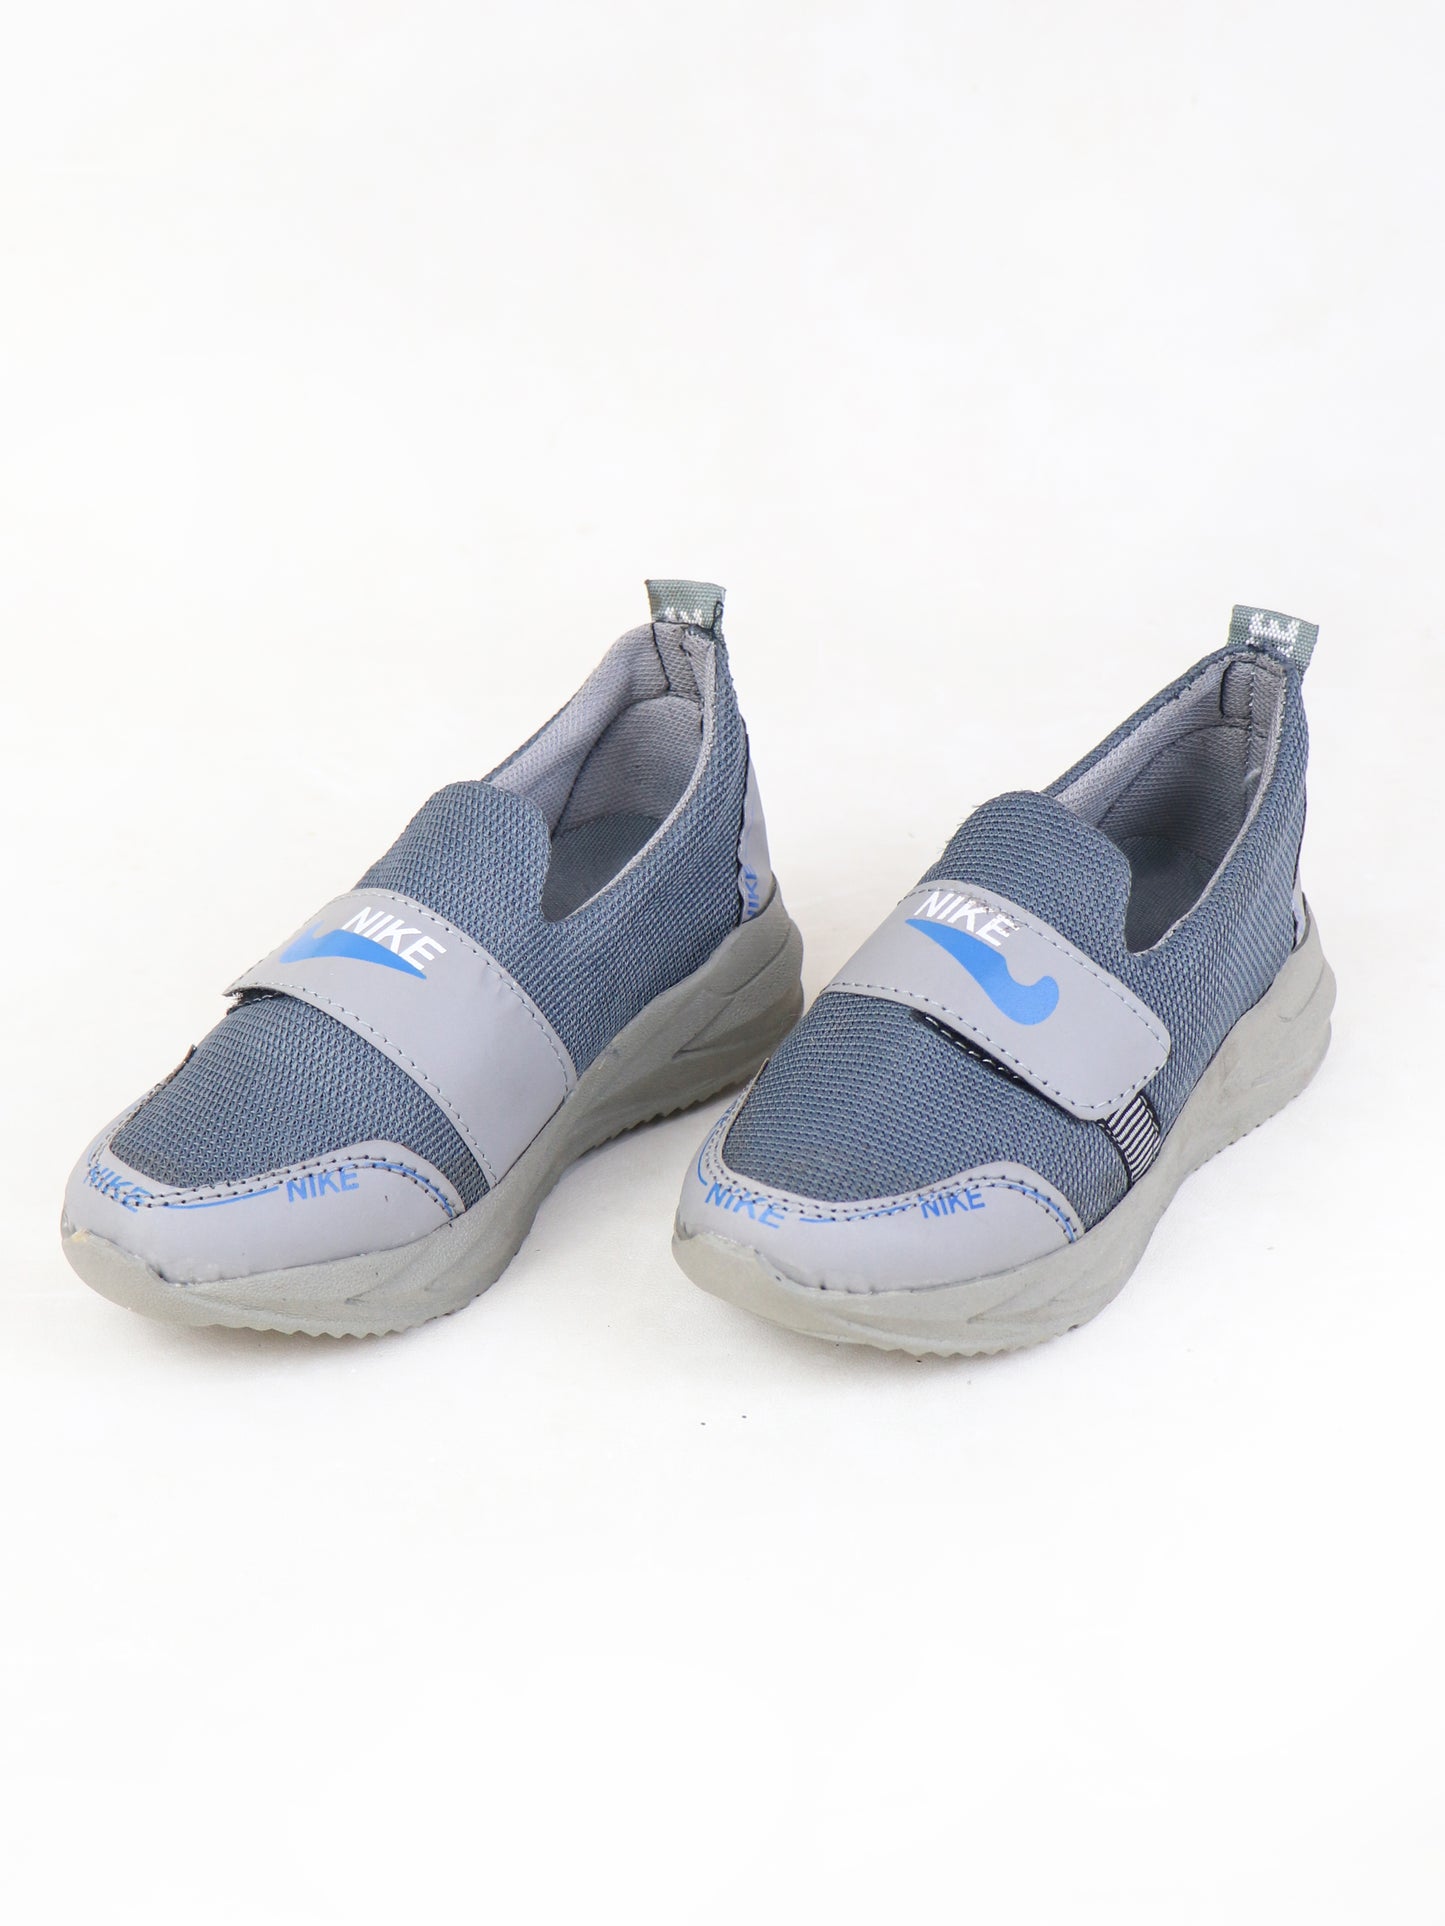 BJ21 Boys Shoes 8Yrs - 12Yrs NK Grey